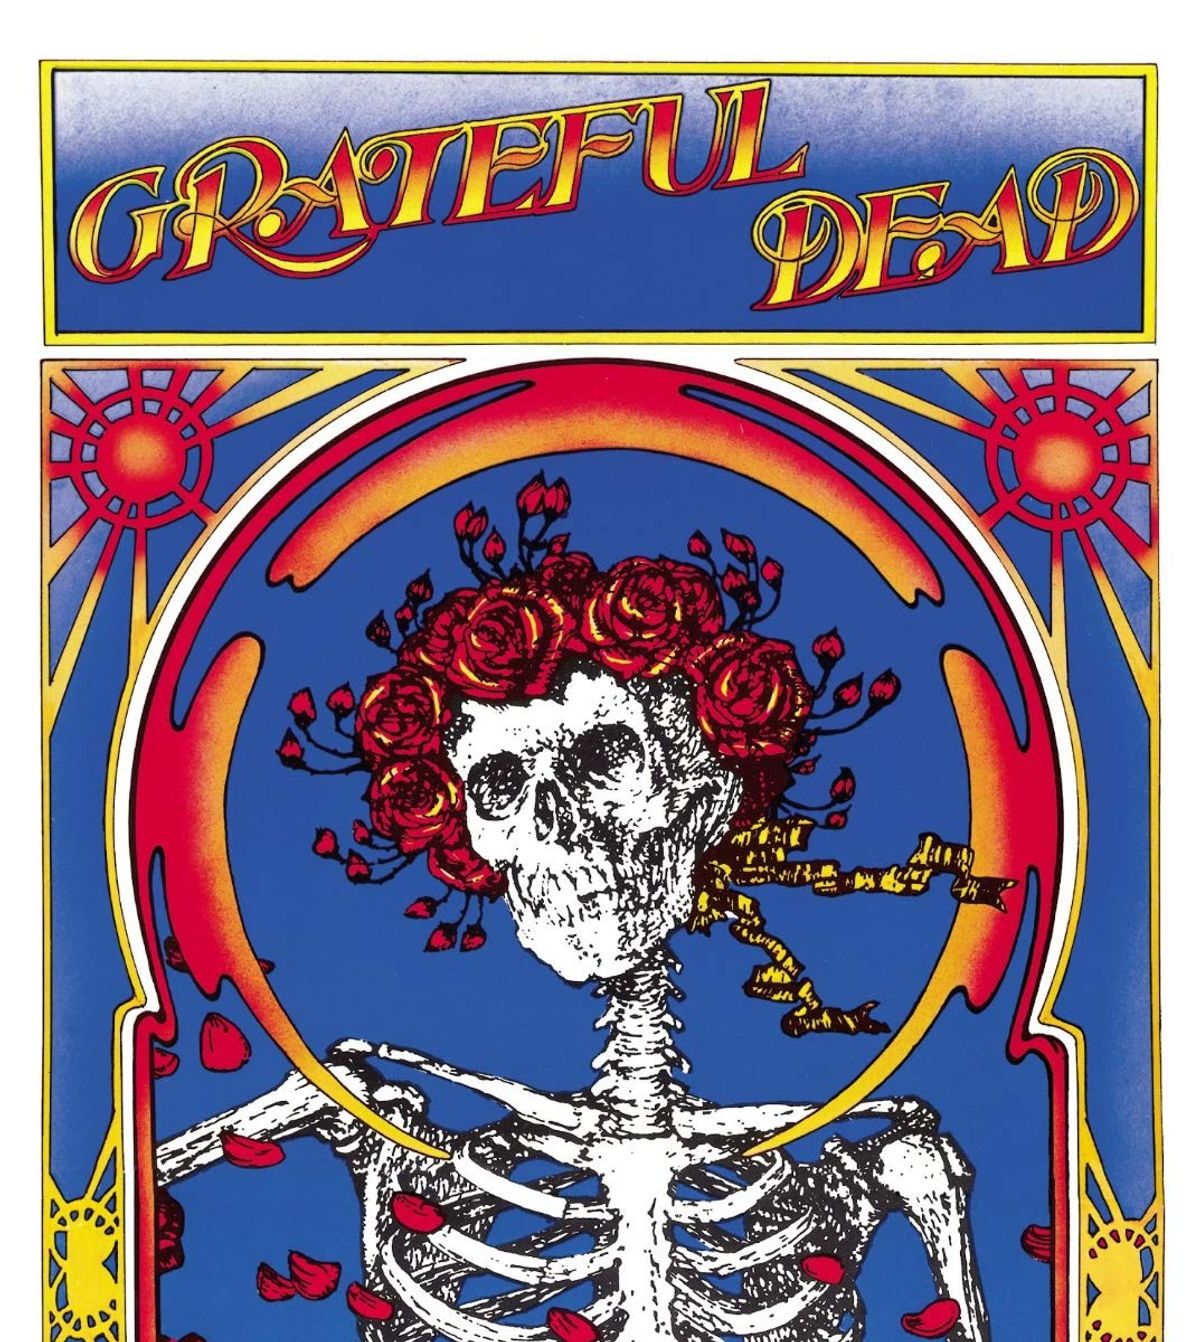 #1967SummerOfLove - Grateful Dead - Cream Puff War (Grateful Dead)